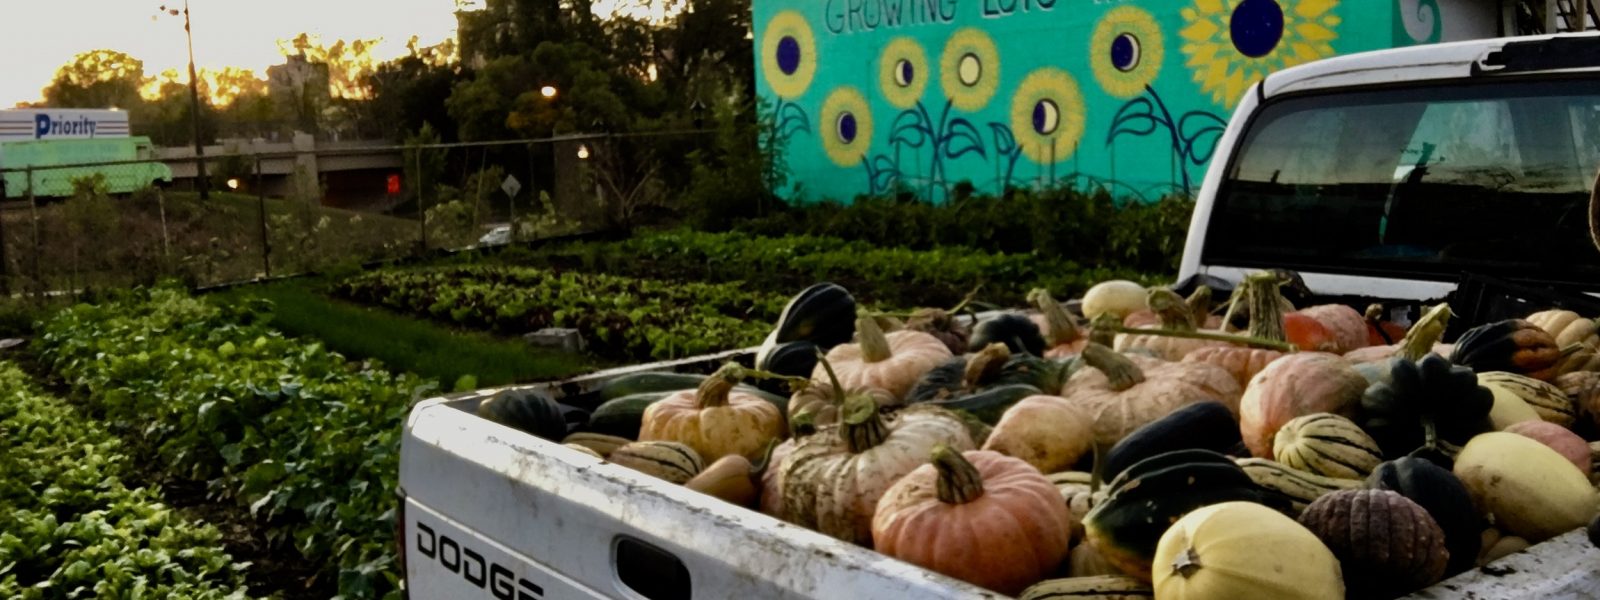 A truck full of pumpkins next to a field